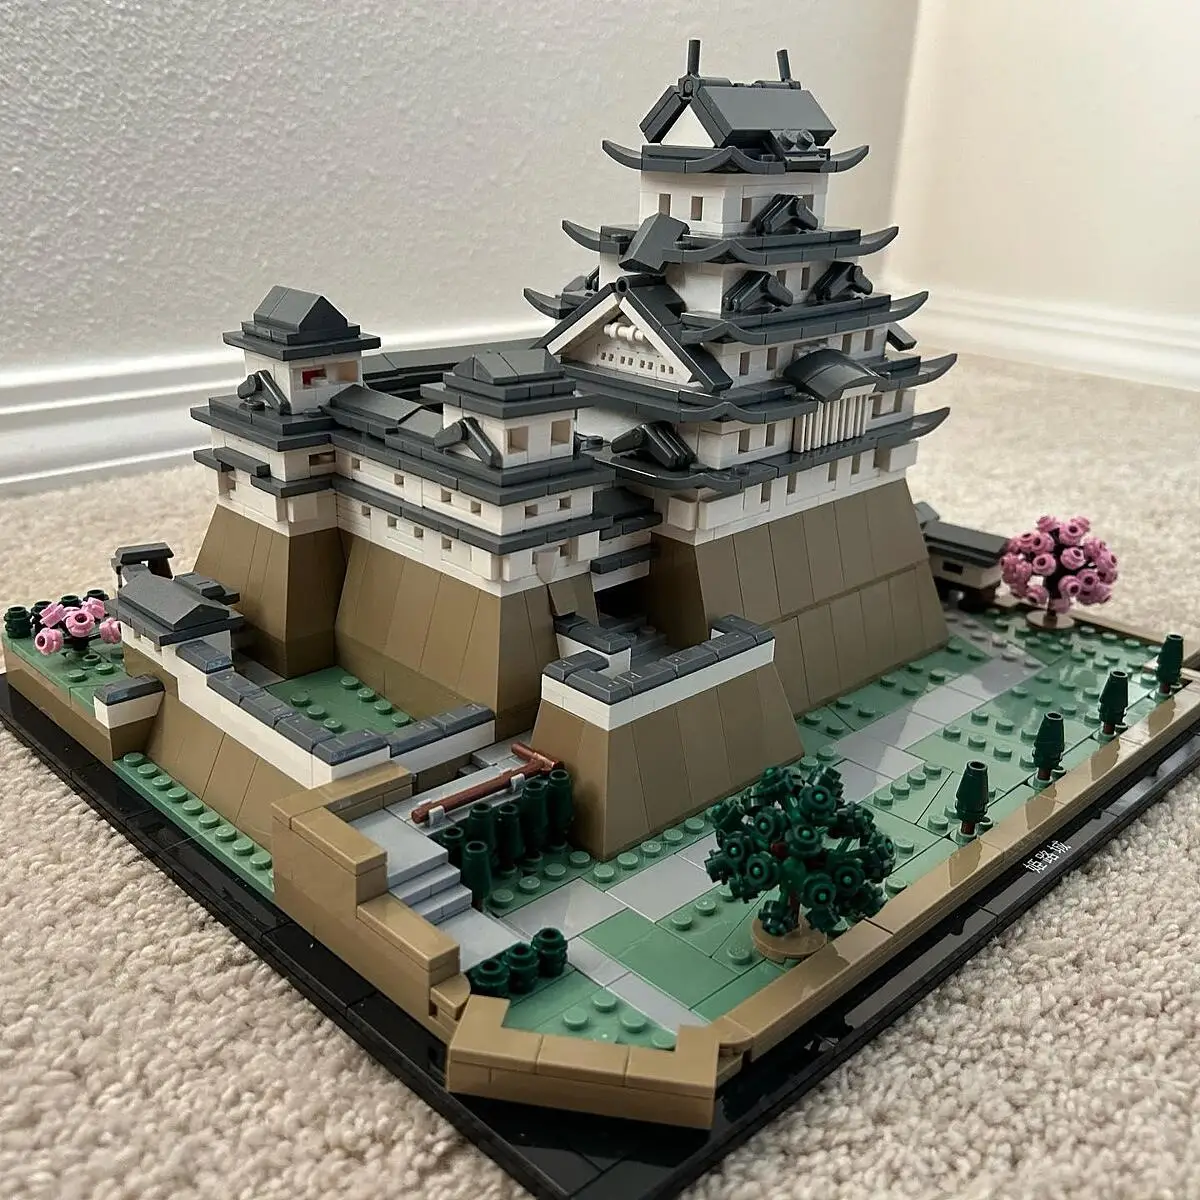 LEGO Architecture Himeji Castle, 21060 - Lego & Construction